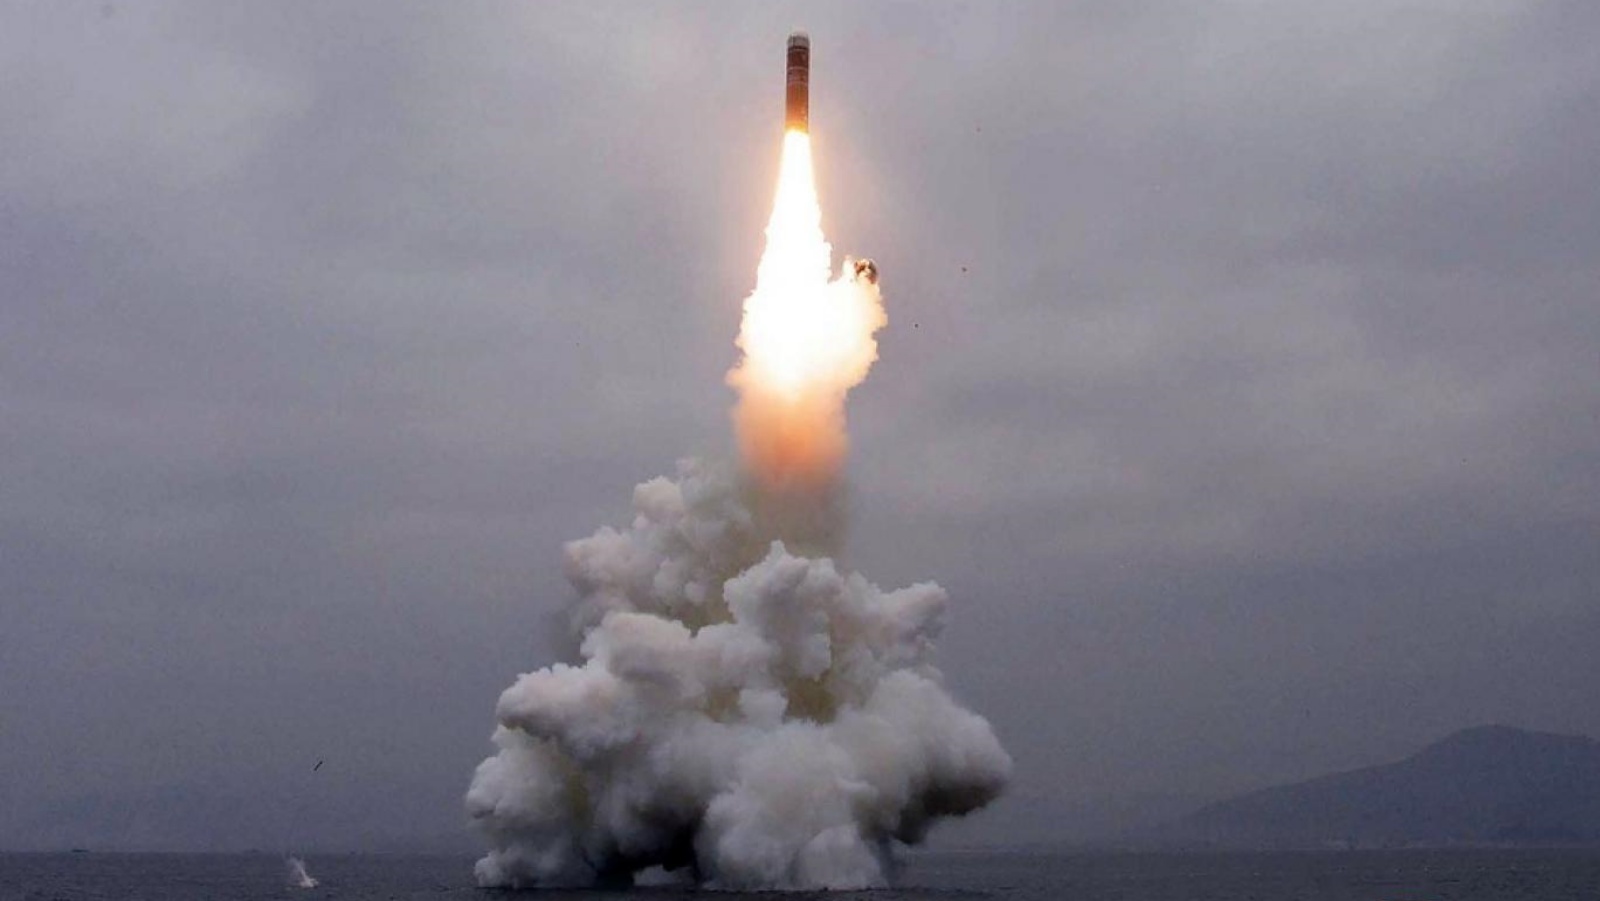 اليابان تعلن تطوير سلاح صاروخي يطال الصين وكوريا الشمالية بعد سقوط صاروخ بمياهها الإقليمية